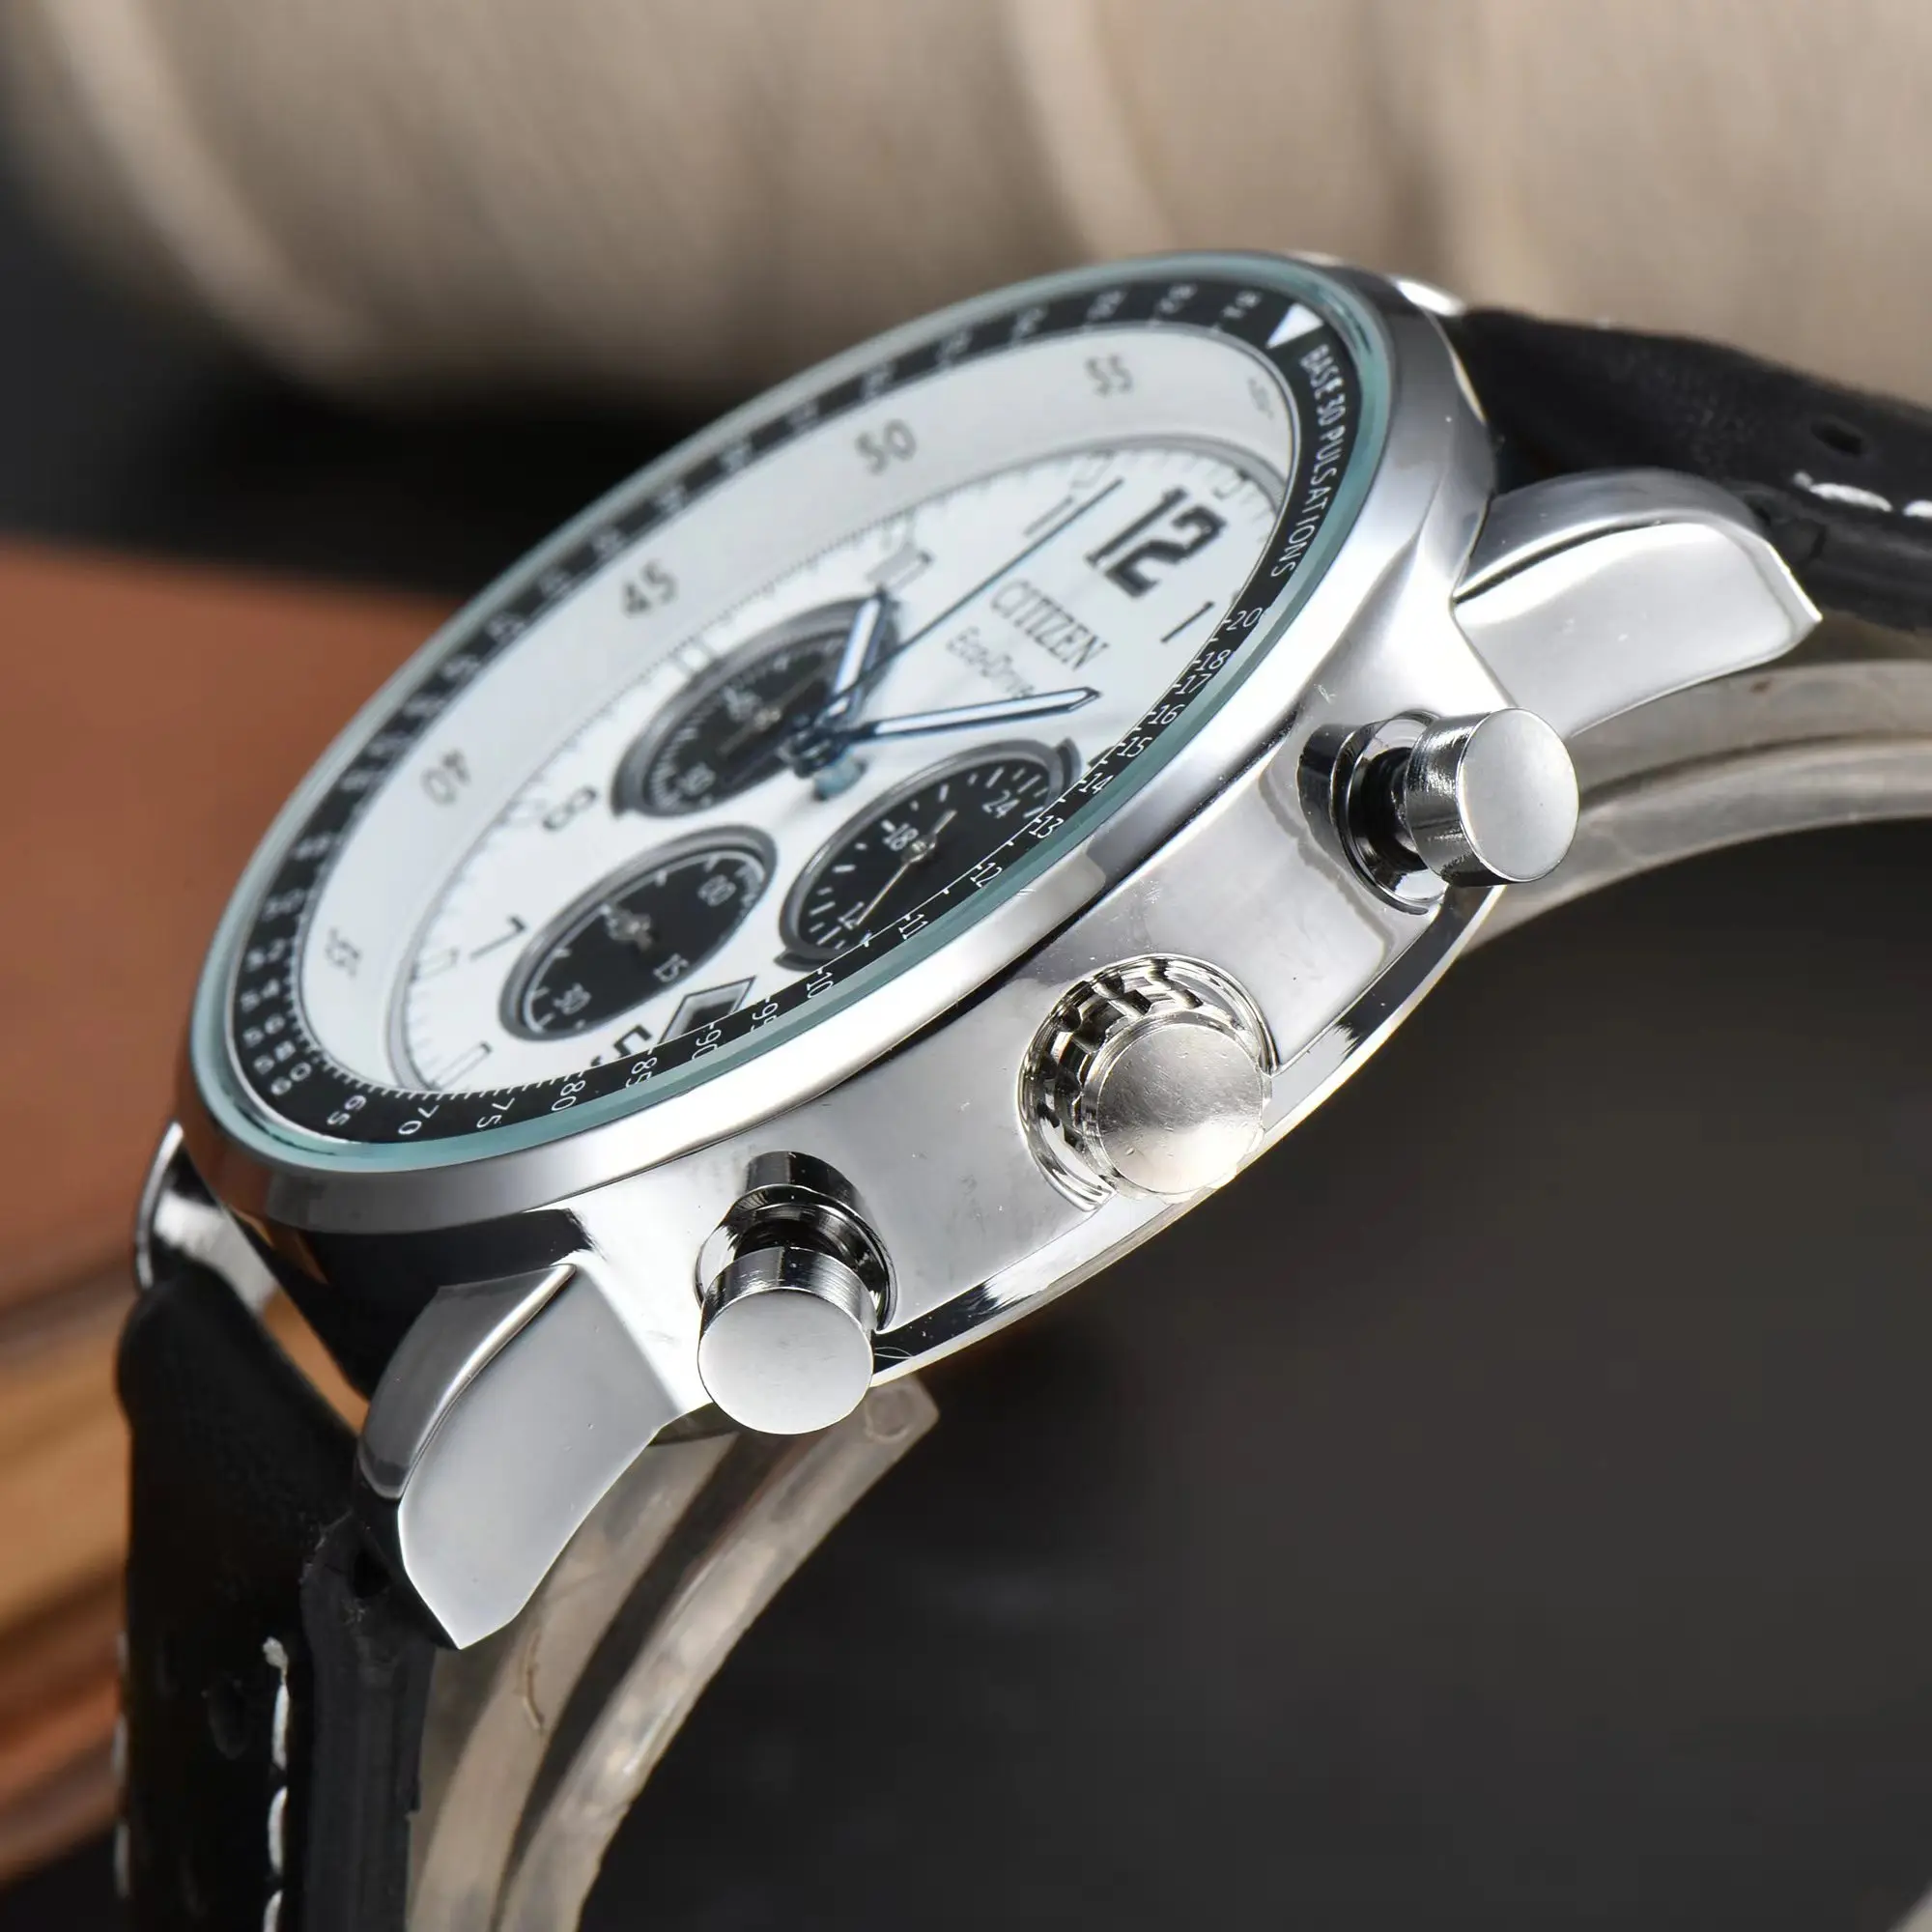 Citizen Eco-Drive CA4500-16X Flight Military Future Force Chronograph Leather Strap Quartz Watch for Men Relogio Reloj Hombre